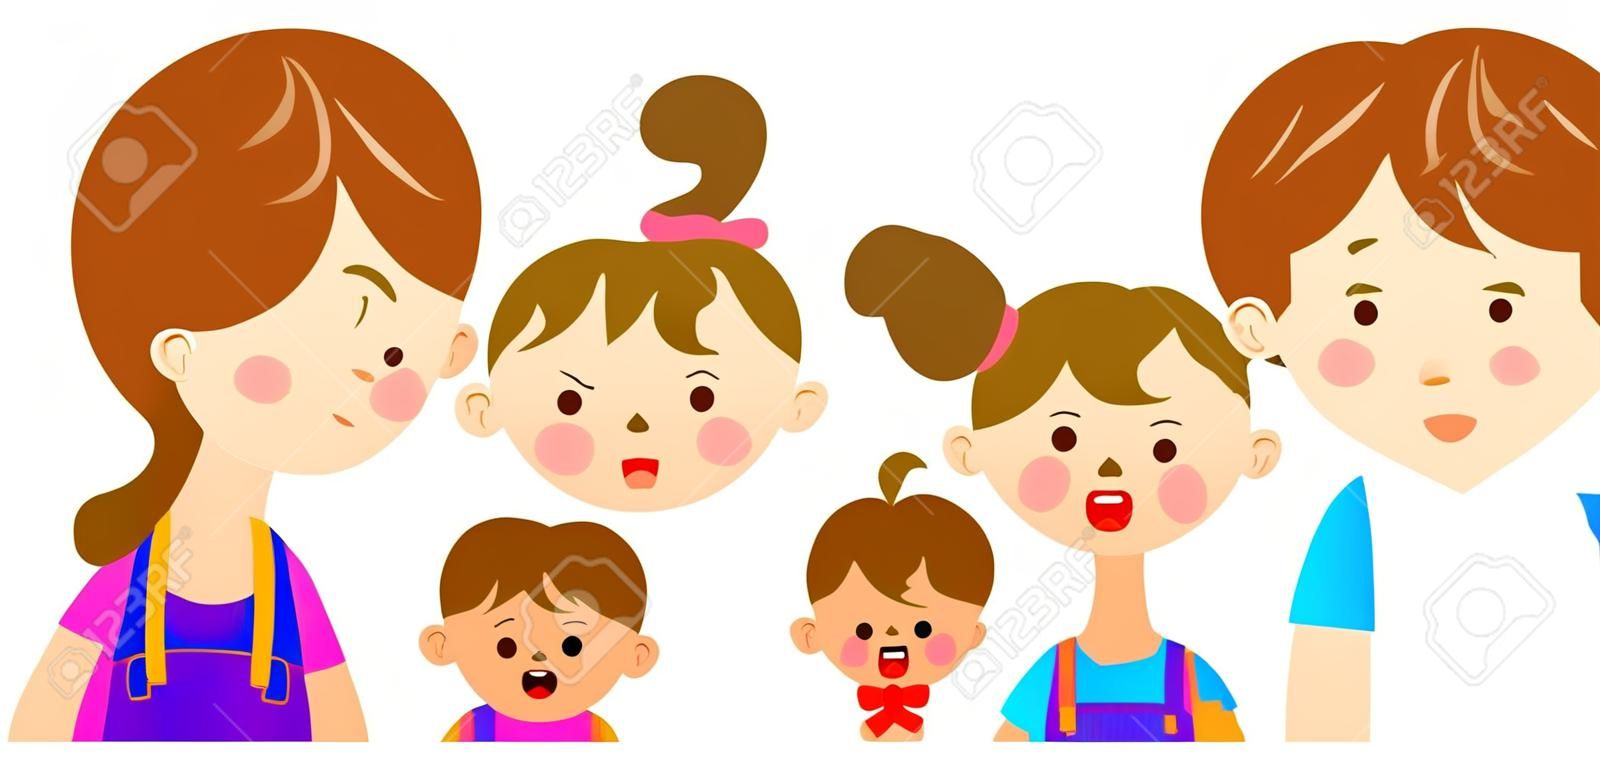 Illustratie van het bovenlichaam van de familie van vier met onrustige expressie